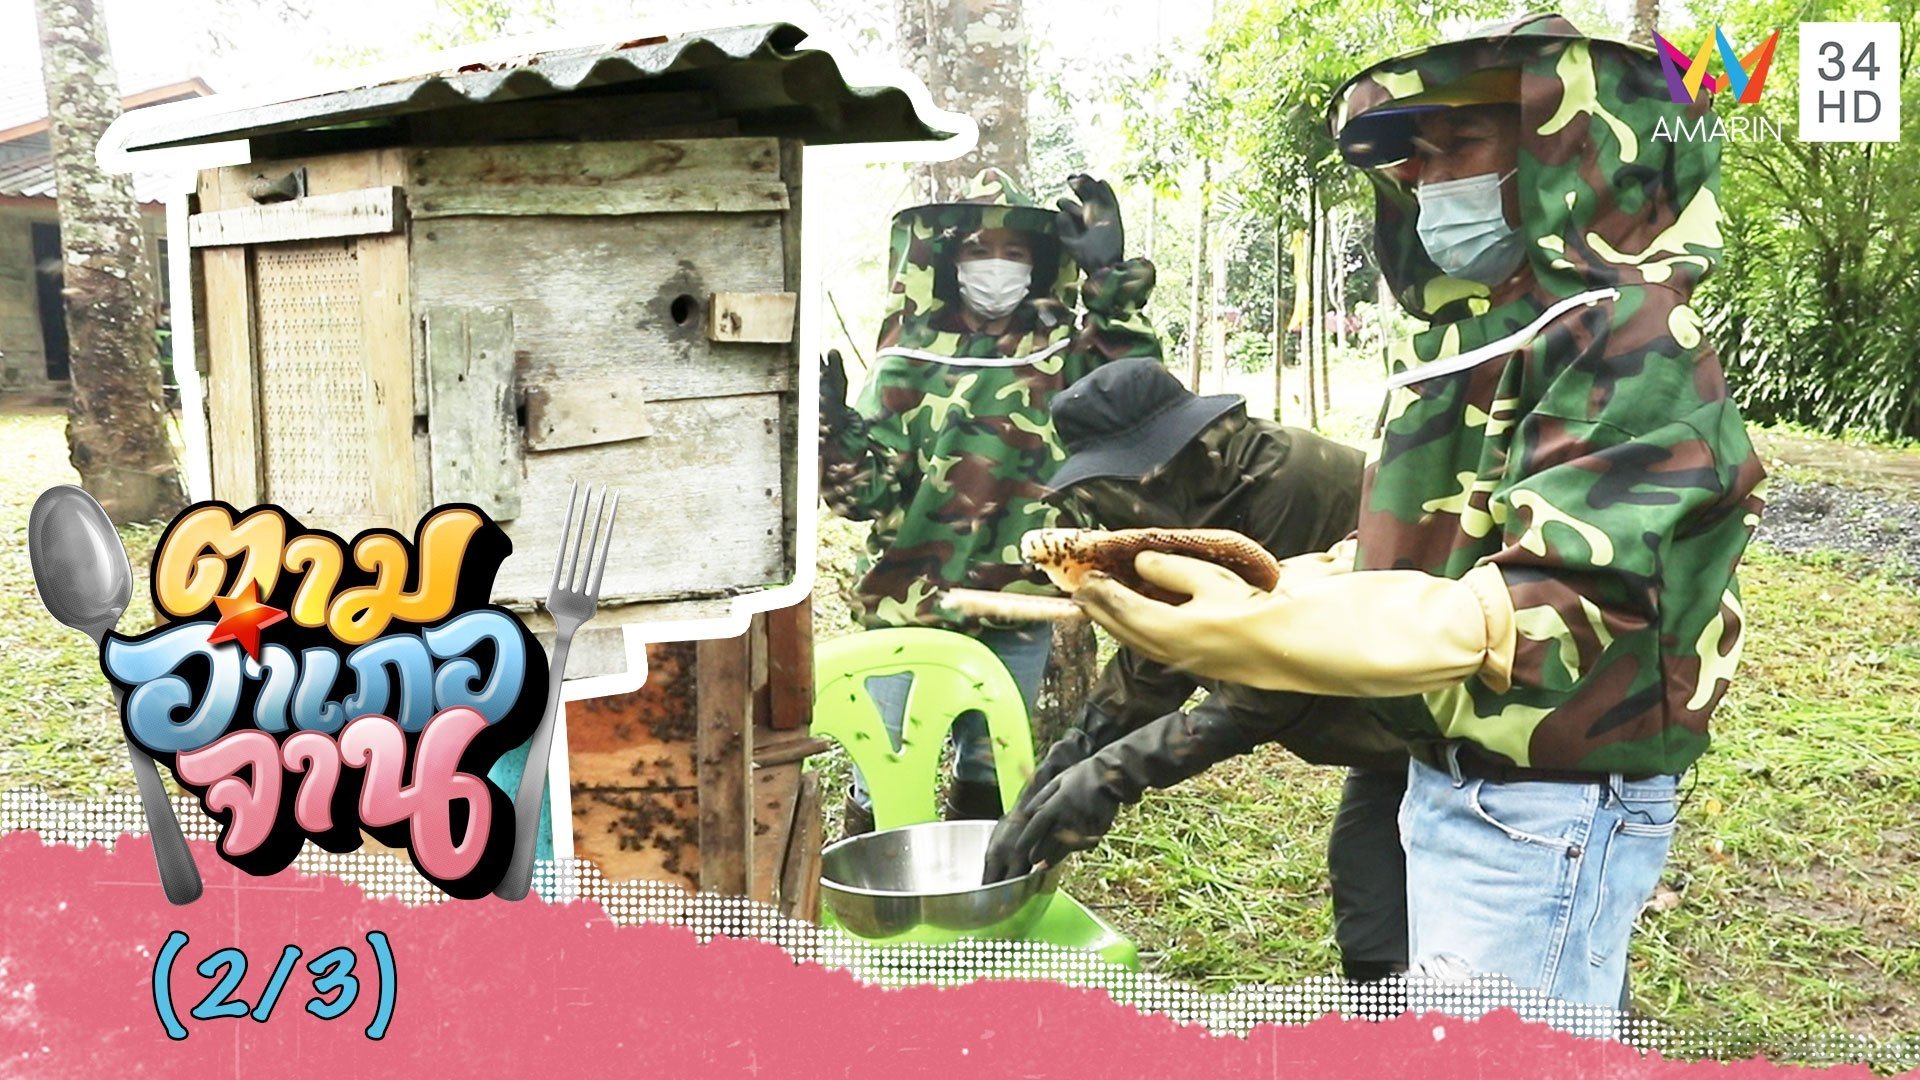 เข้าสวนส่องการเก็บรังผึ้งโพรง | ตามอำเภอจาน | 18 ธ.ค. 64 (2/3) | AMARIN TVHD34